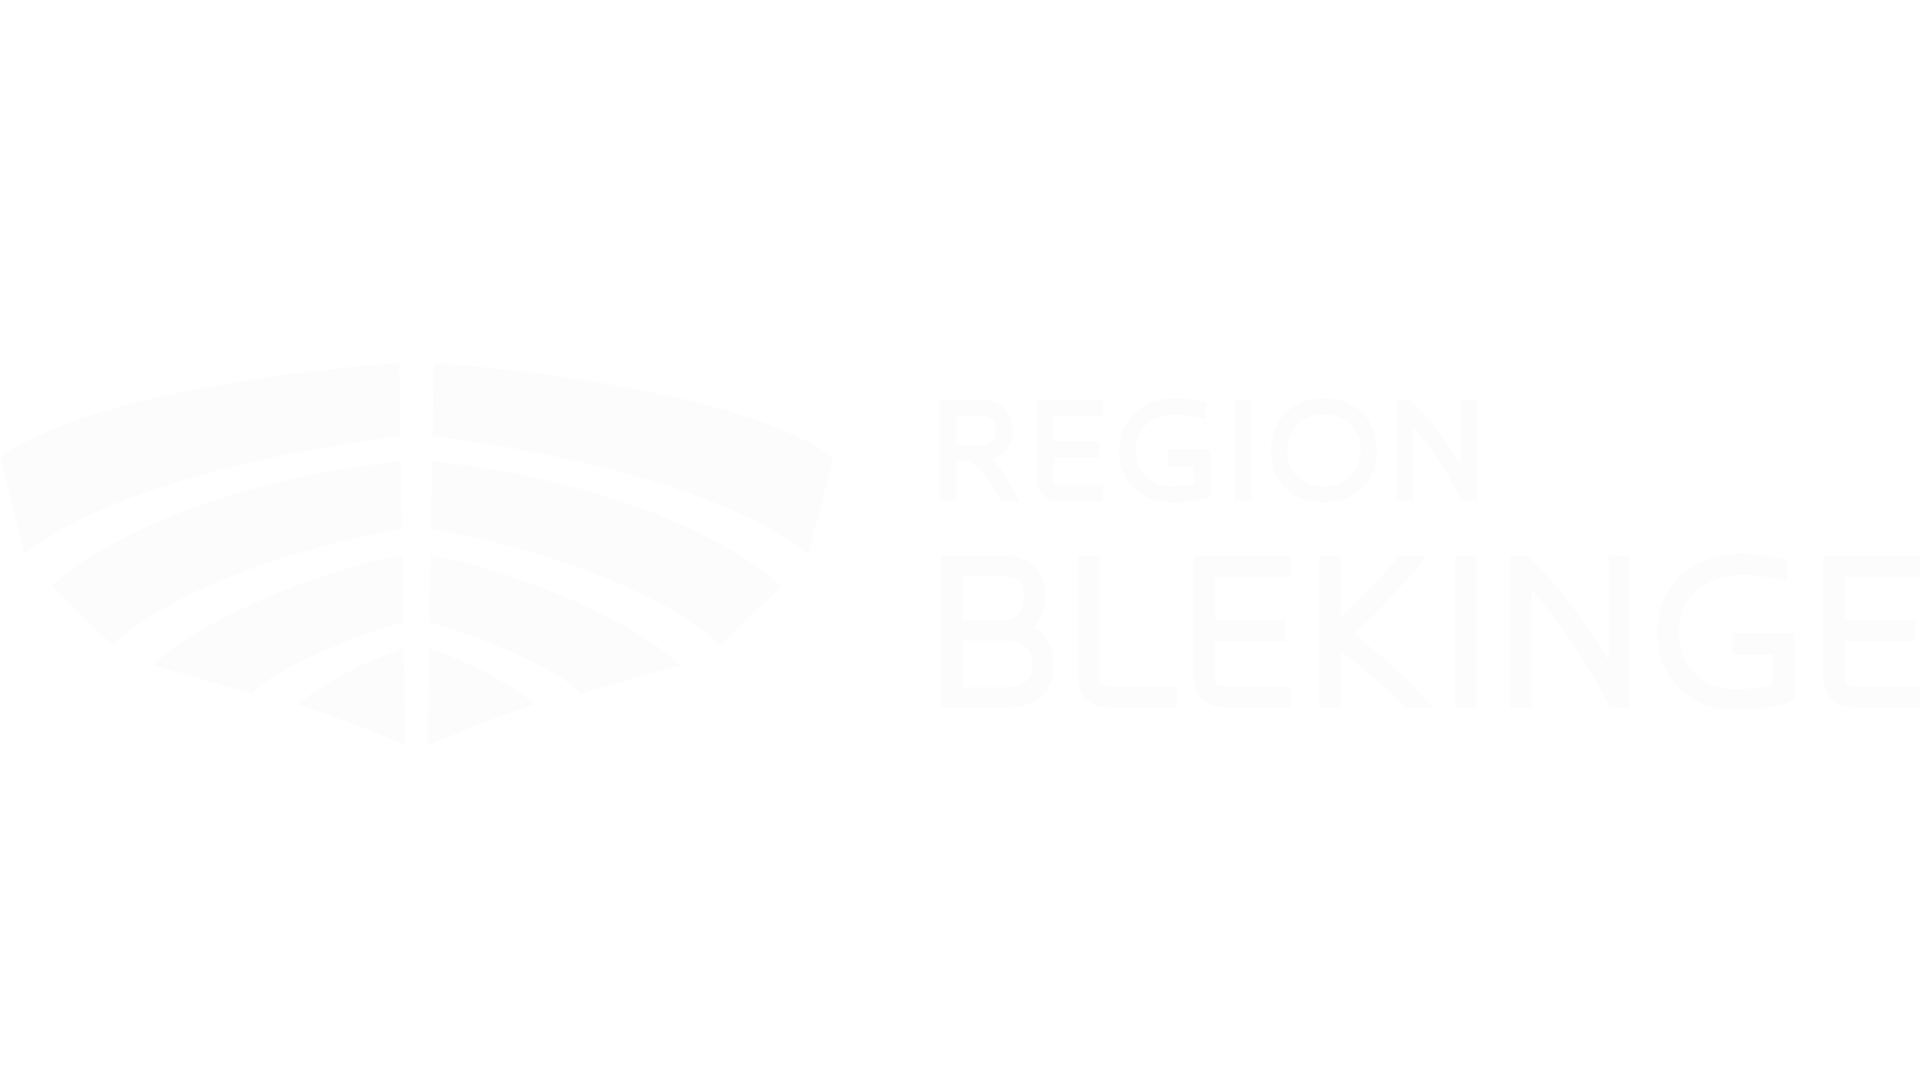 Region blekinge